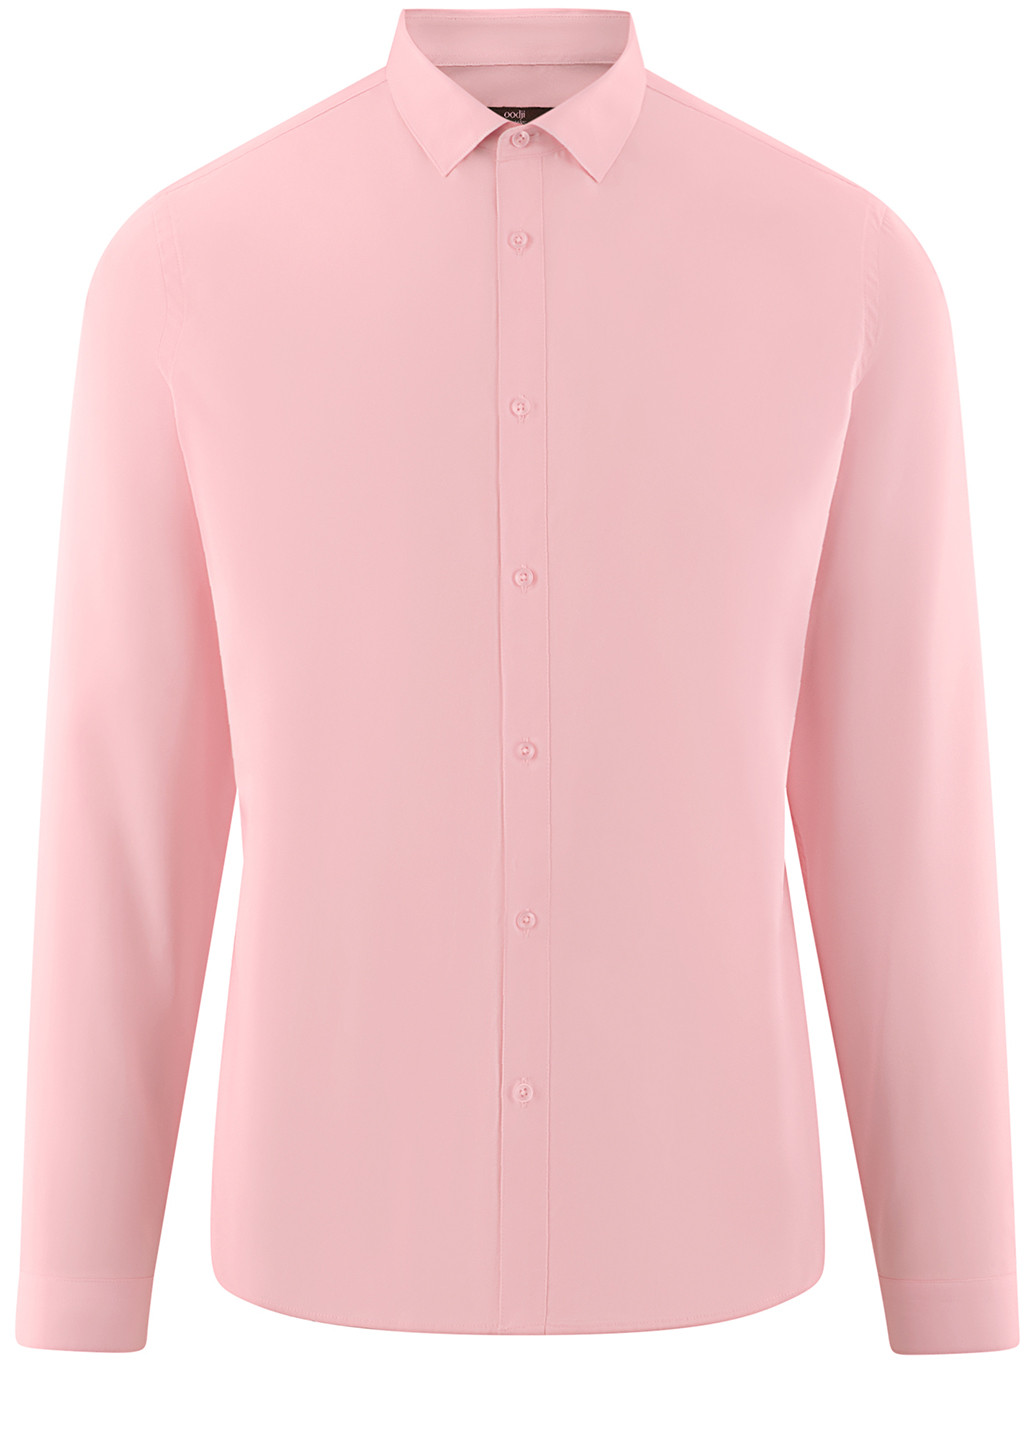 Светло-розовая классическая рубашка однотонная Oodji с длинным рукавом